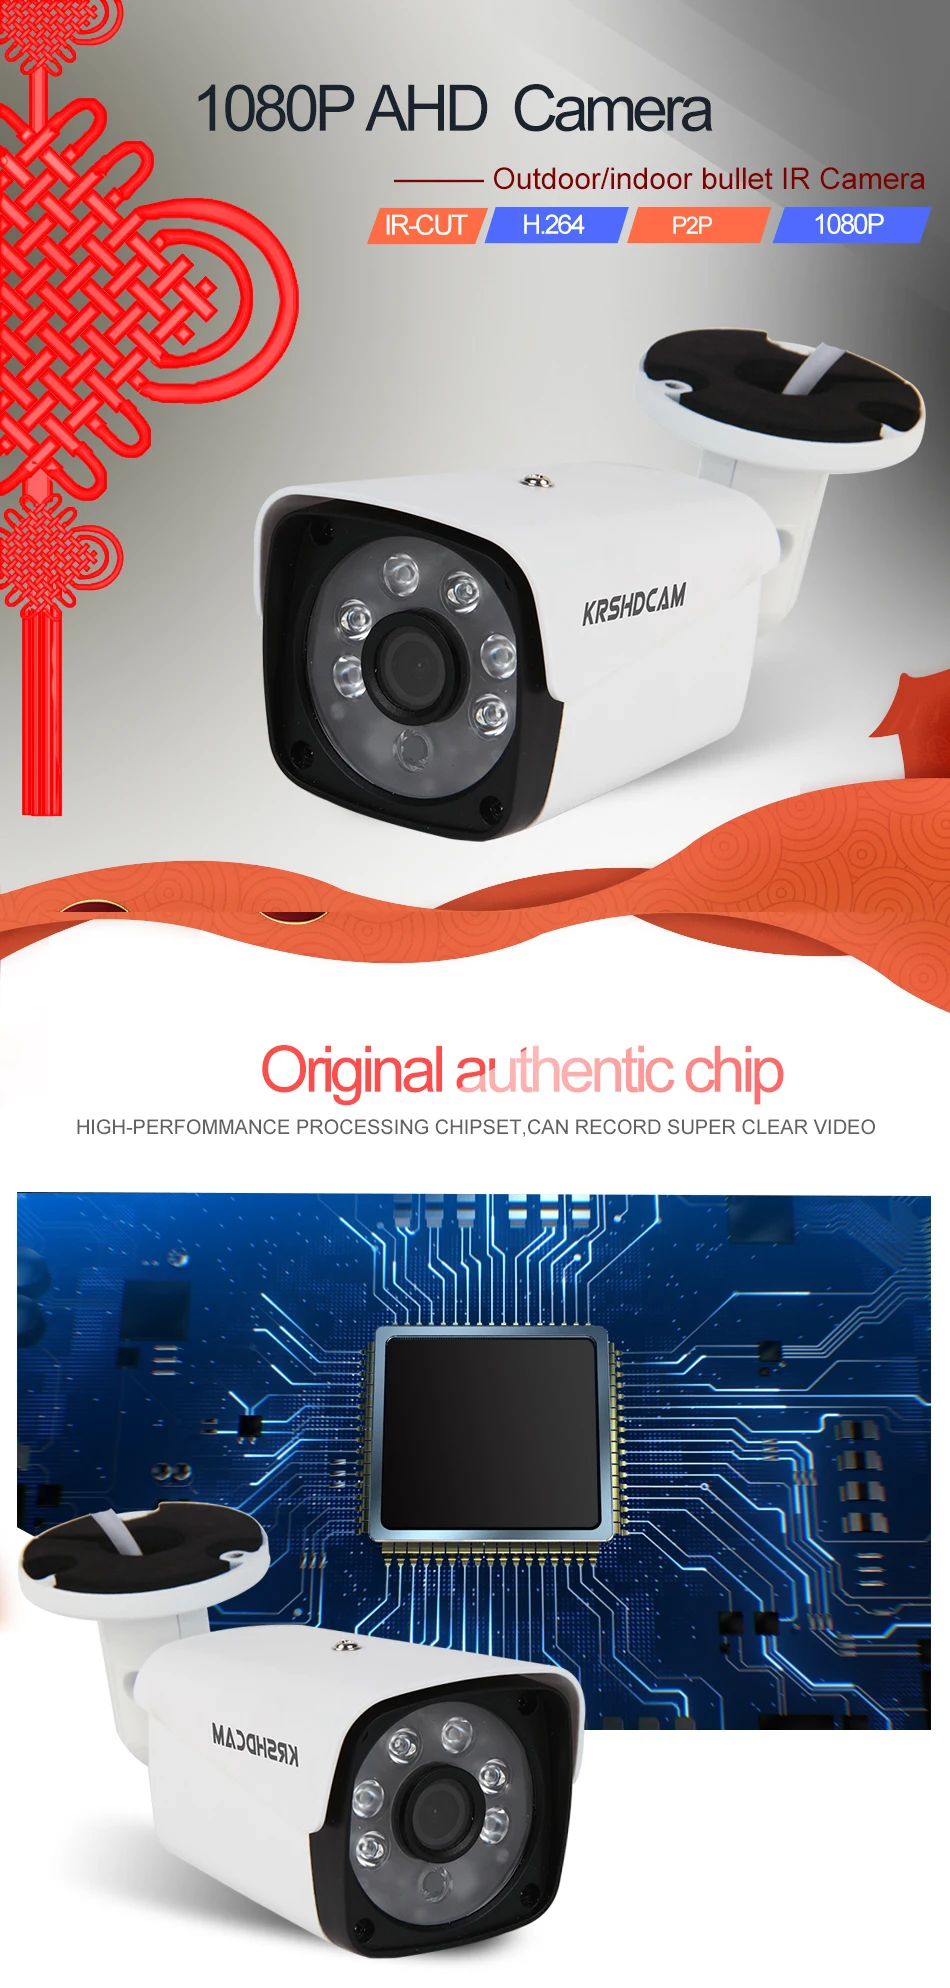 KRSHDCAM Full HD 1080P AHD Камера пуля для наружного видеонаблюдения 6 шт. спектр ночного видения Водонепроницаемый IP66 домашнее видеонаблюдение